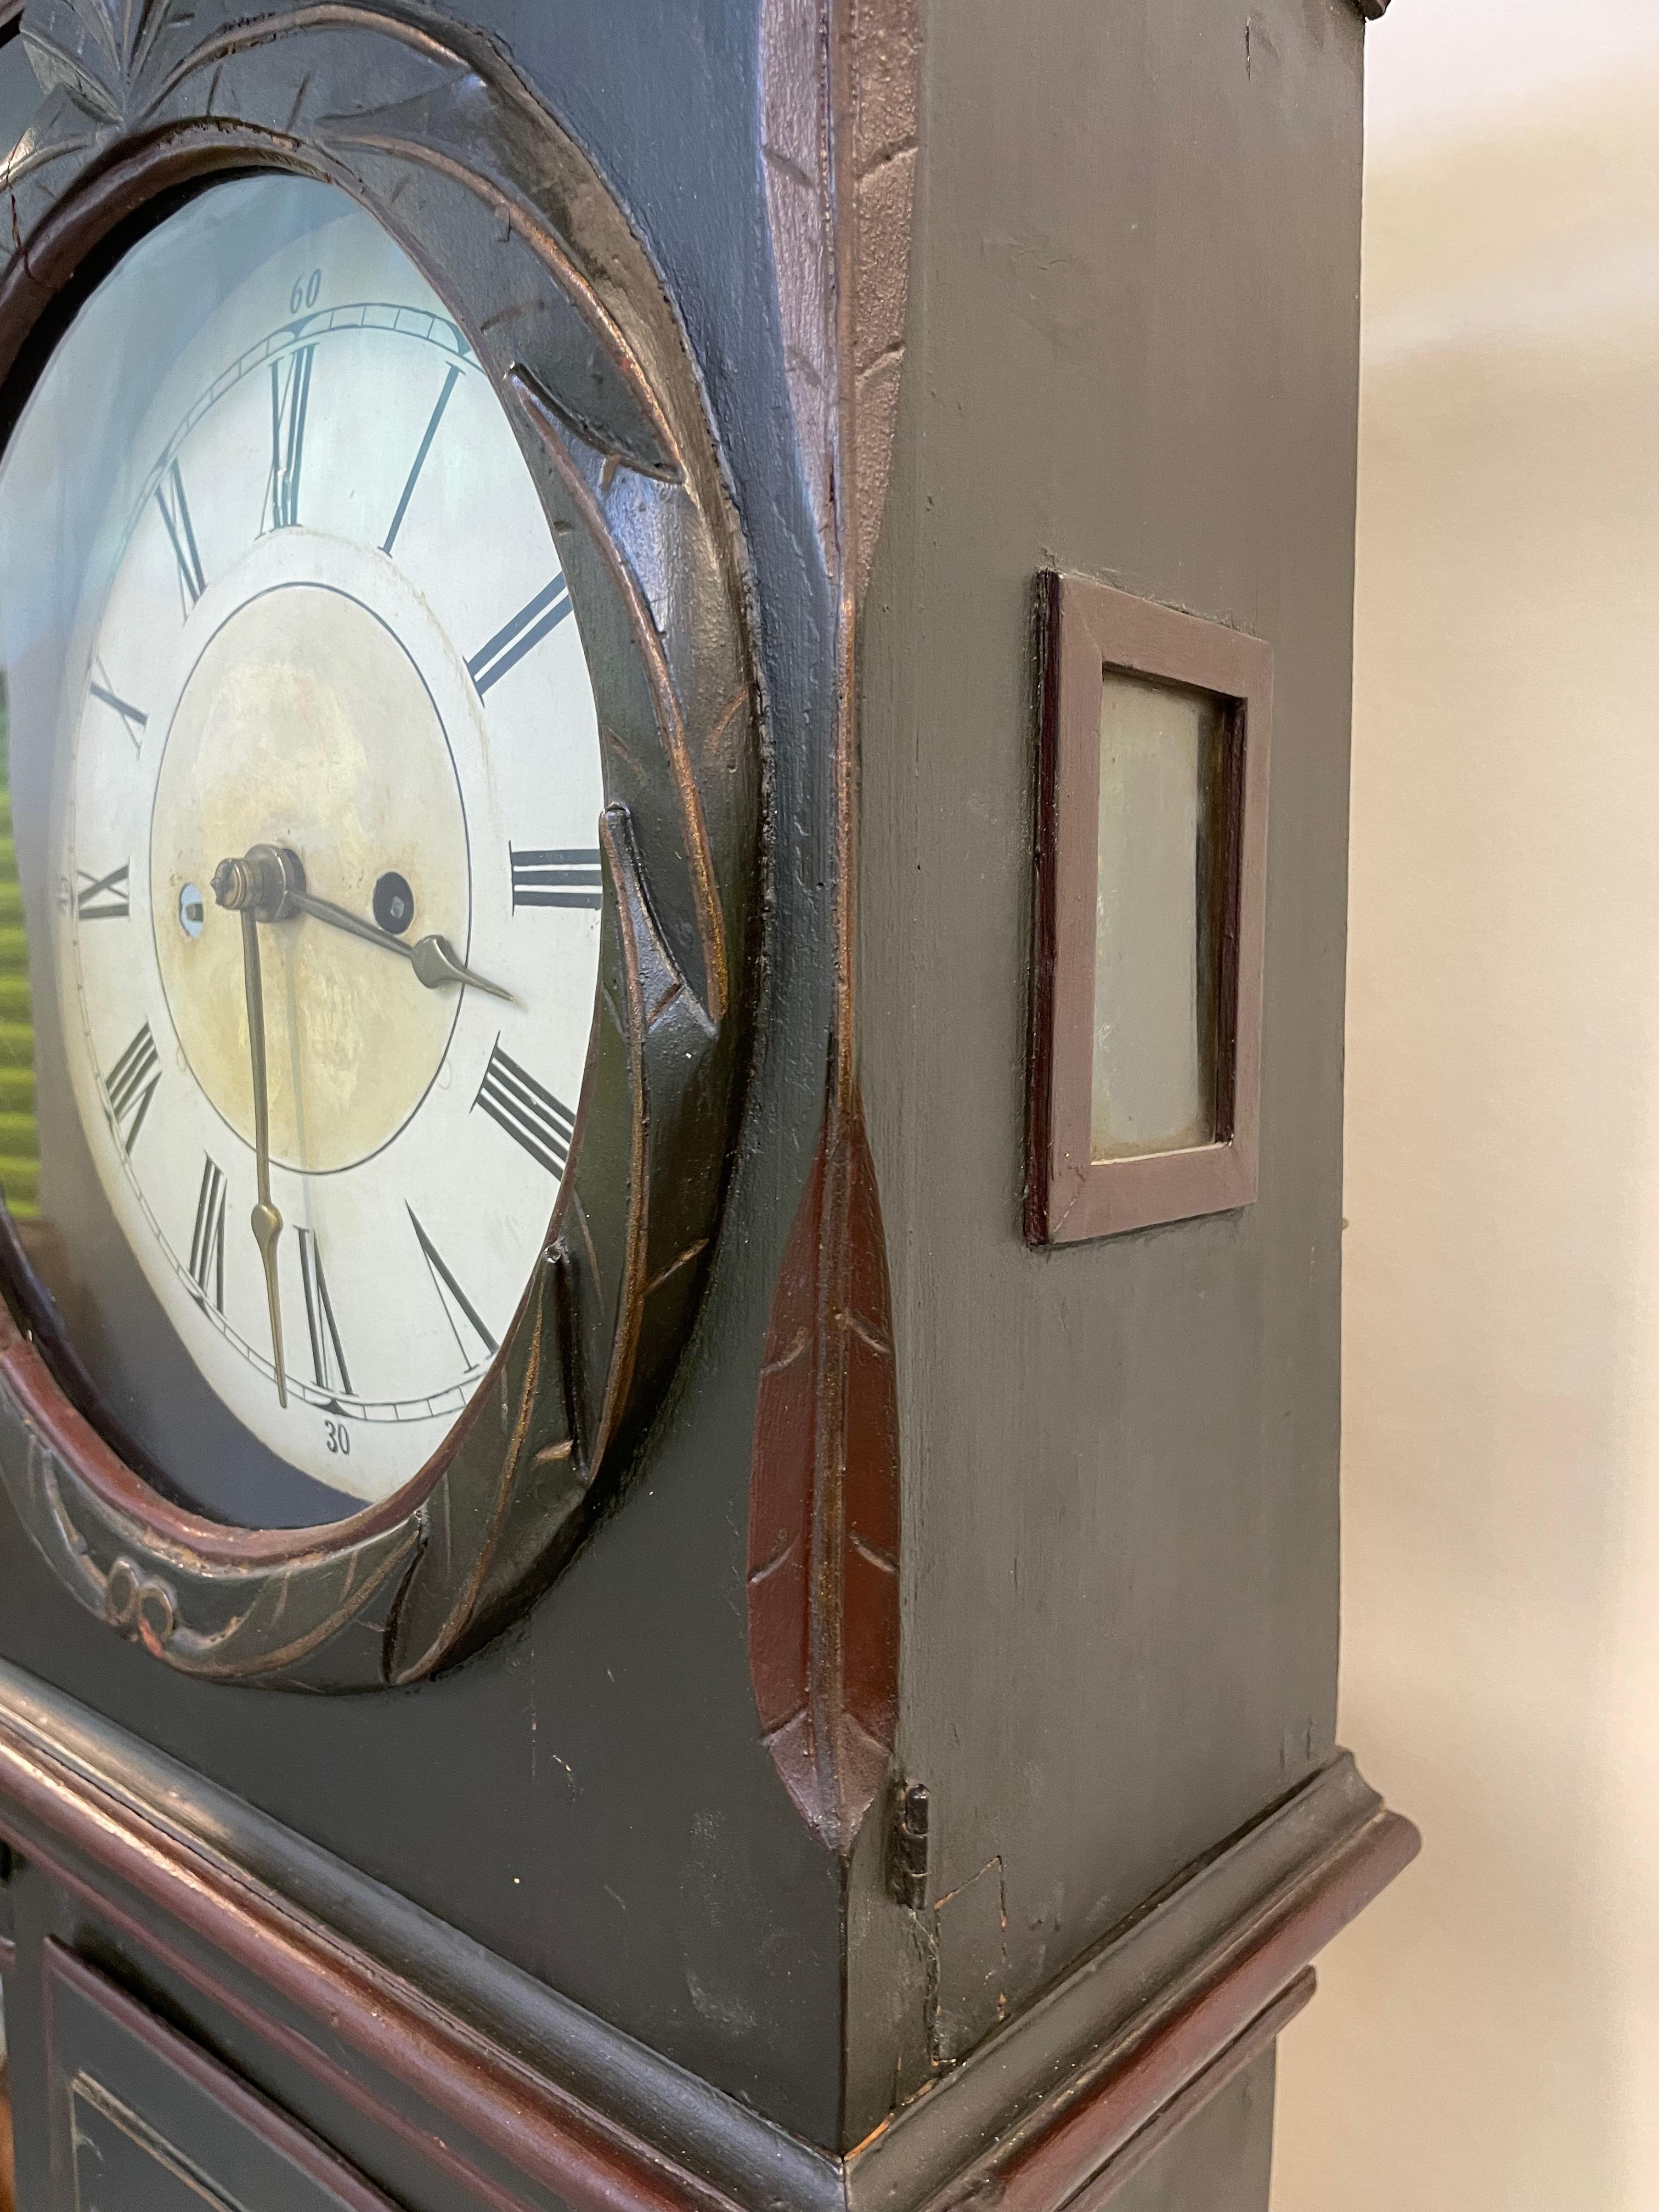 Cette majestueuse horloge grand-père date du premier quart du XIXe siècle. Elle est fabriquée dans le style scandinave traditionnel de l'horlogerie et présente des détails charmants et fantaisistes sur le visage de l'horloge ainsi que des panneaux